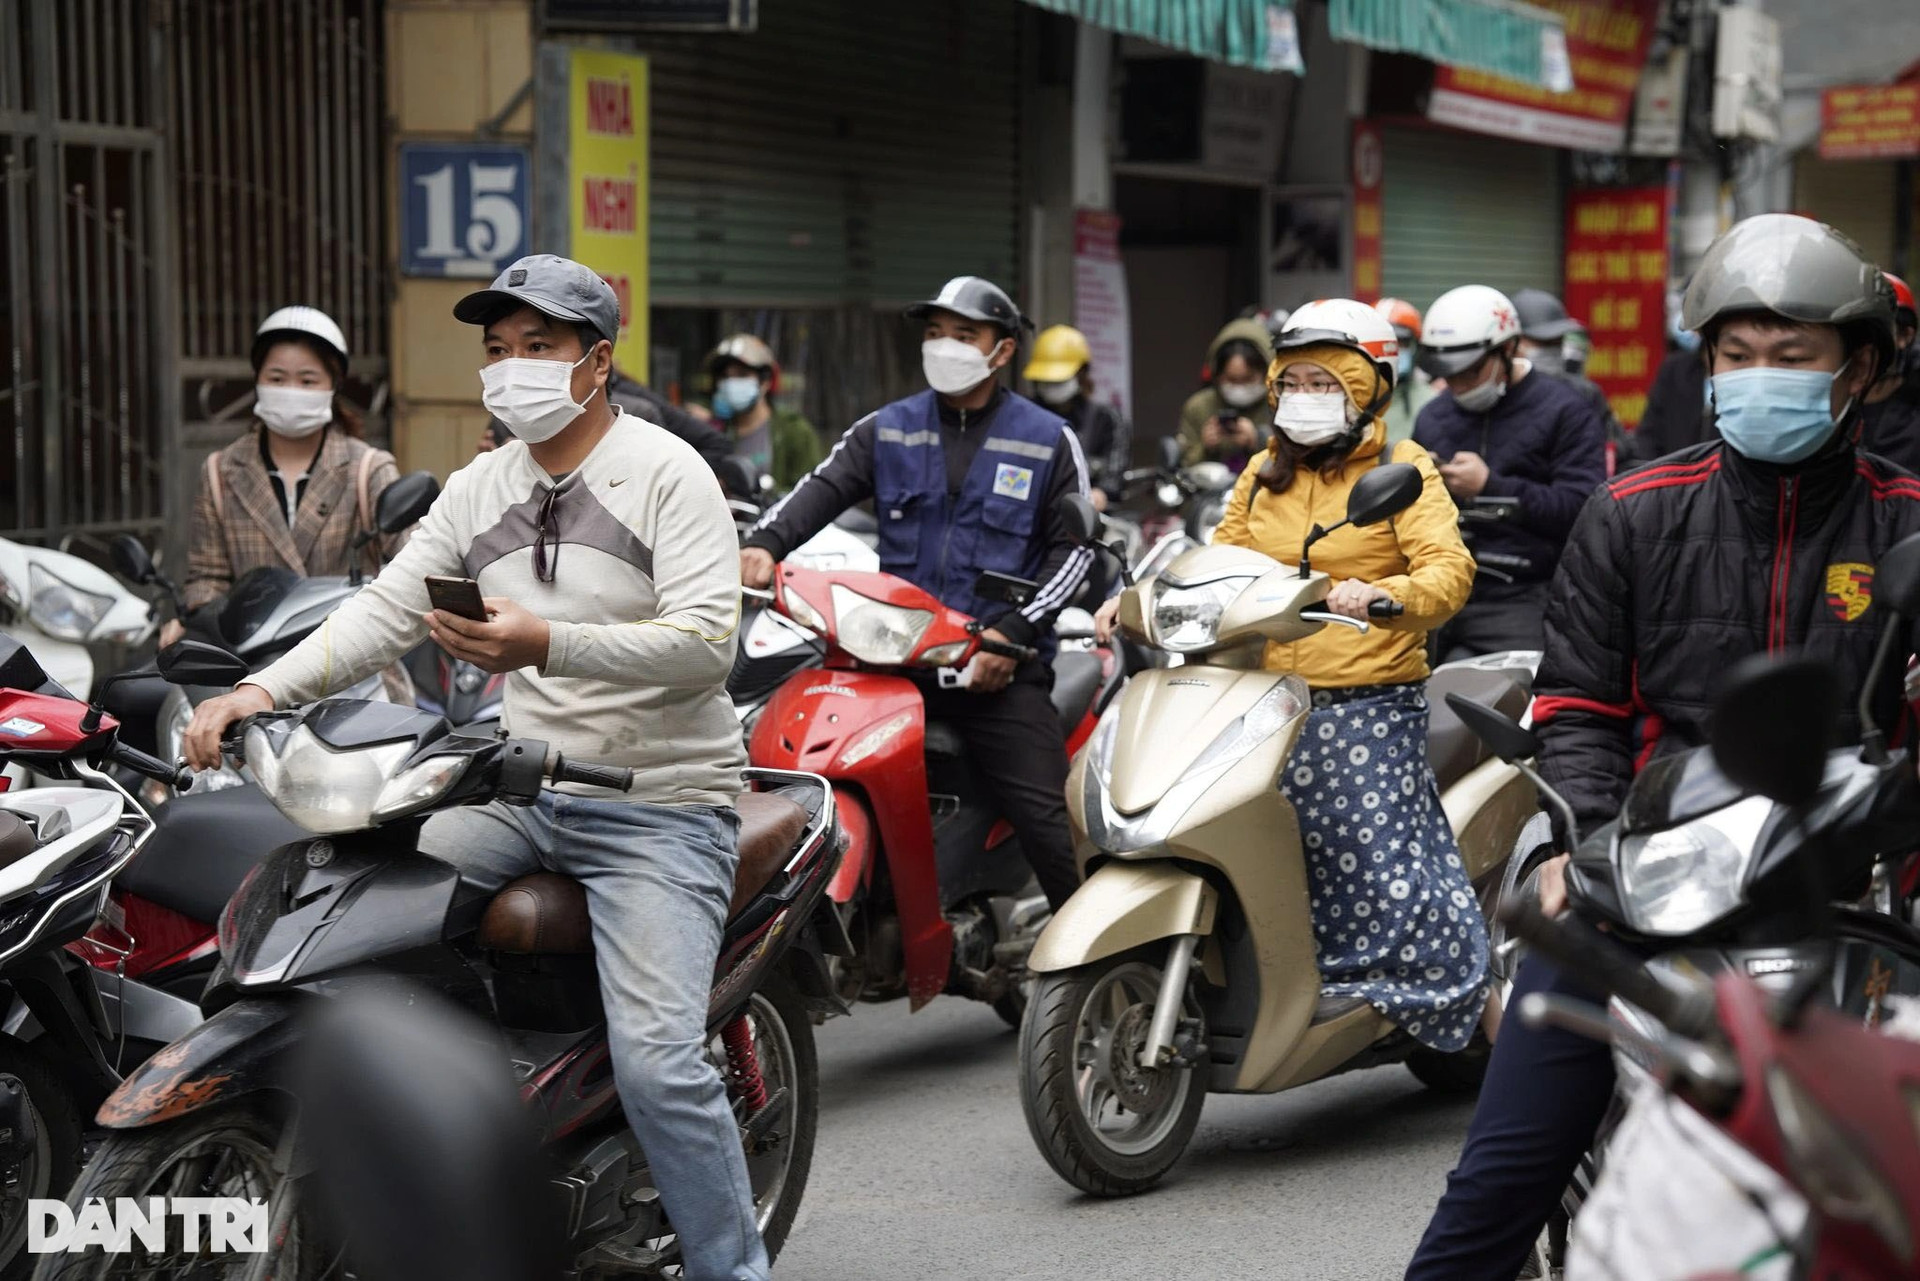 Hà Nội: Đông nghịt người quét QR Code tại ổ dịch Phú Đô để ra vào phường - 5